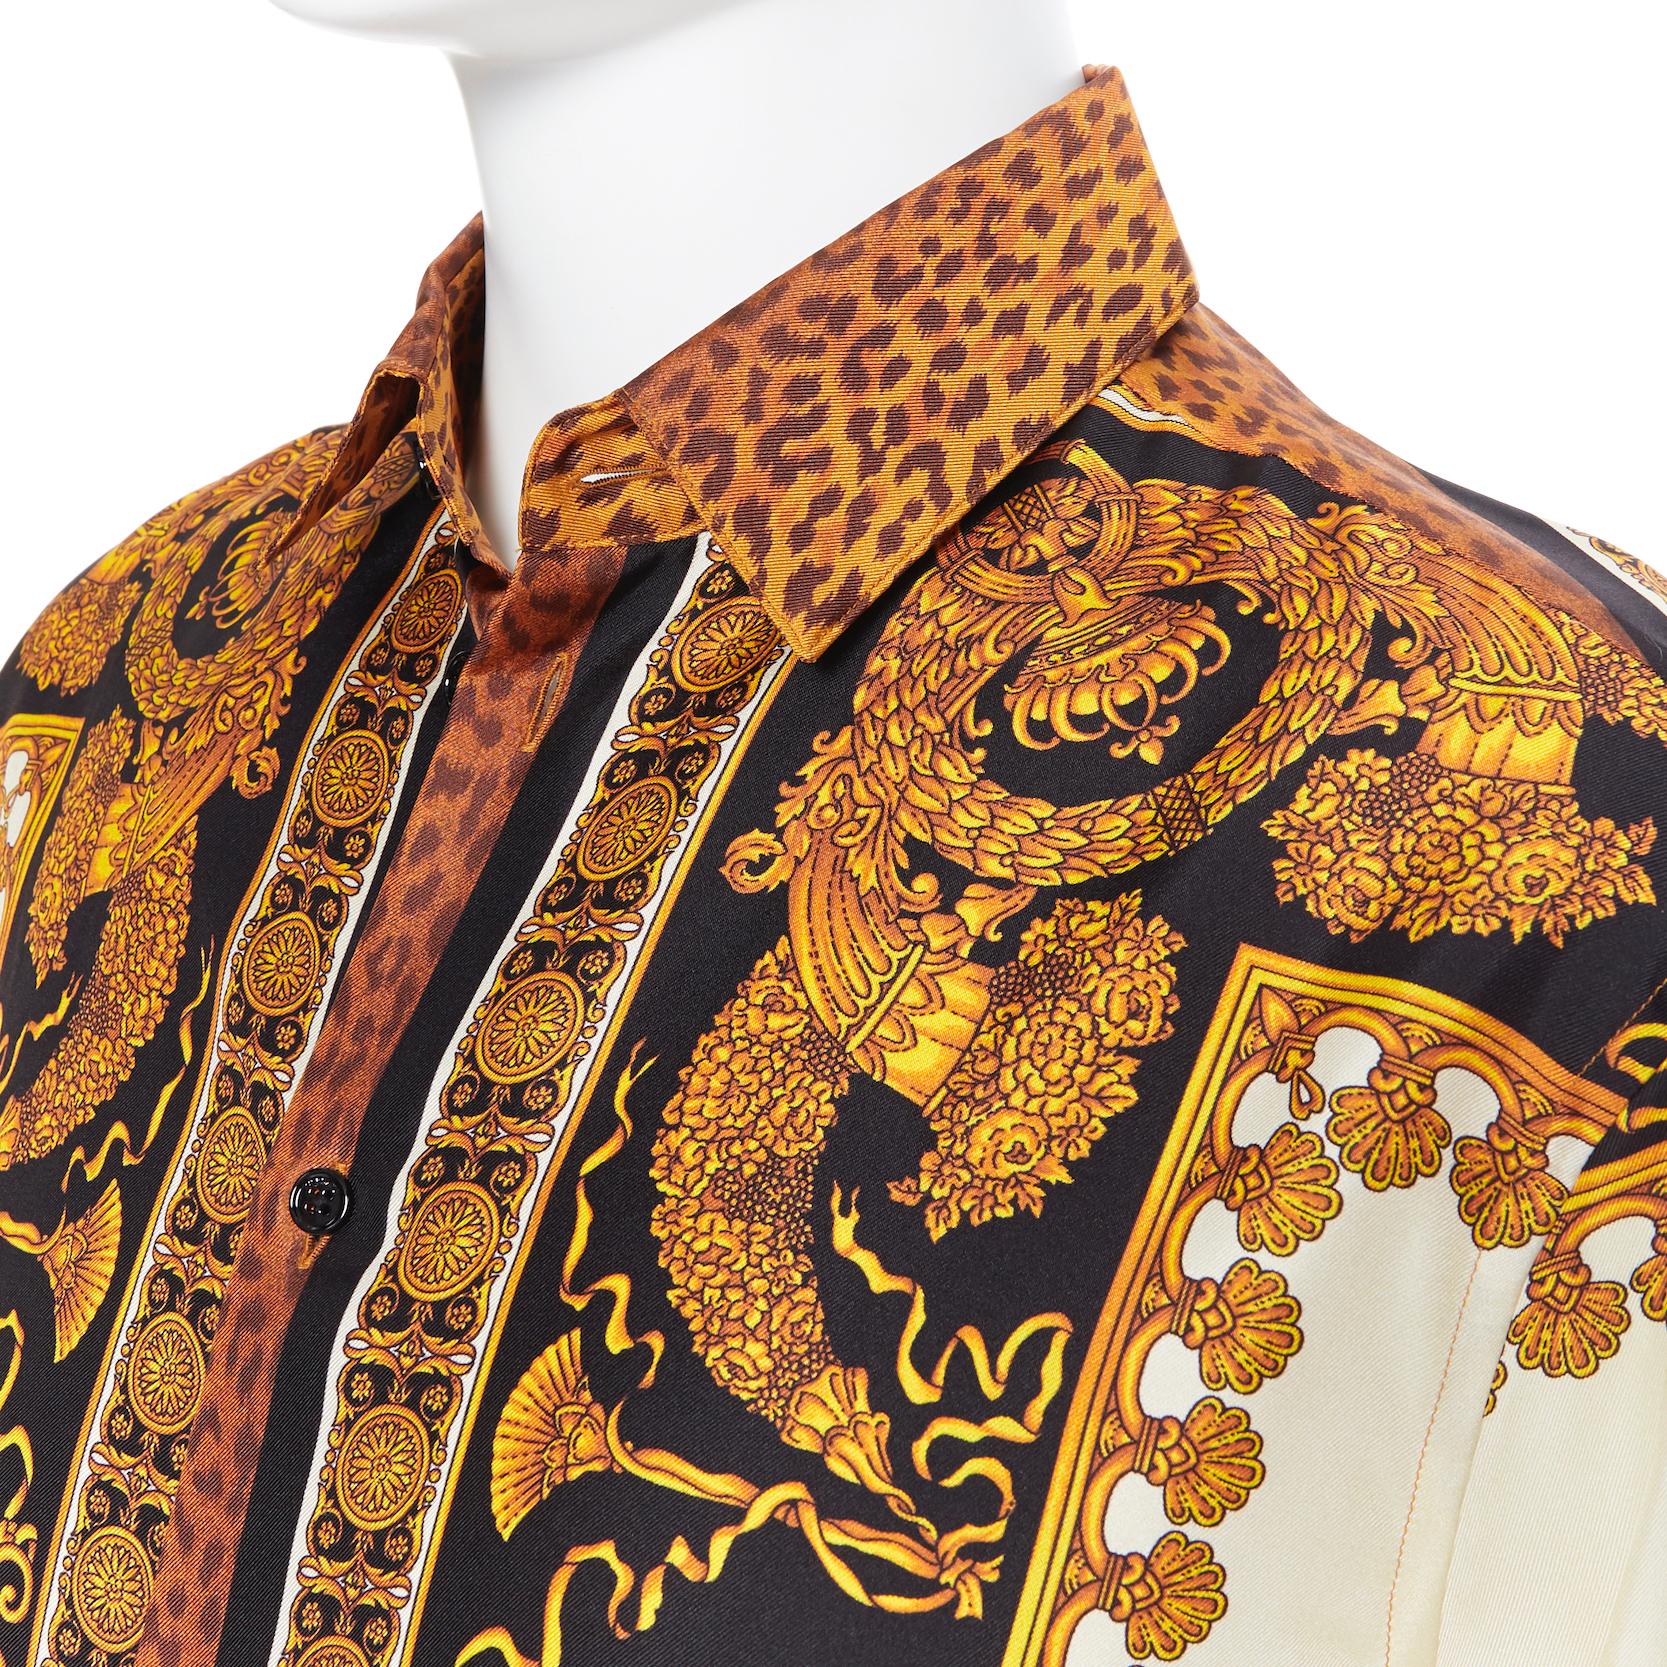 new VERSACE AW18 Runway Wild Leopard gold baroque print 100% silk shirt EU38 S 3